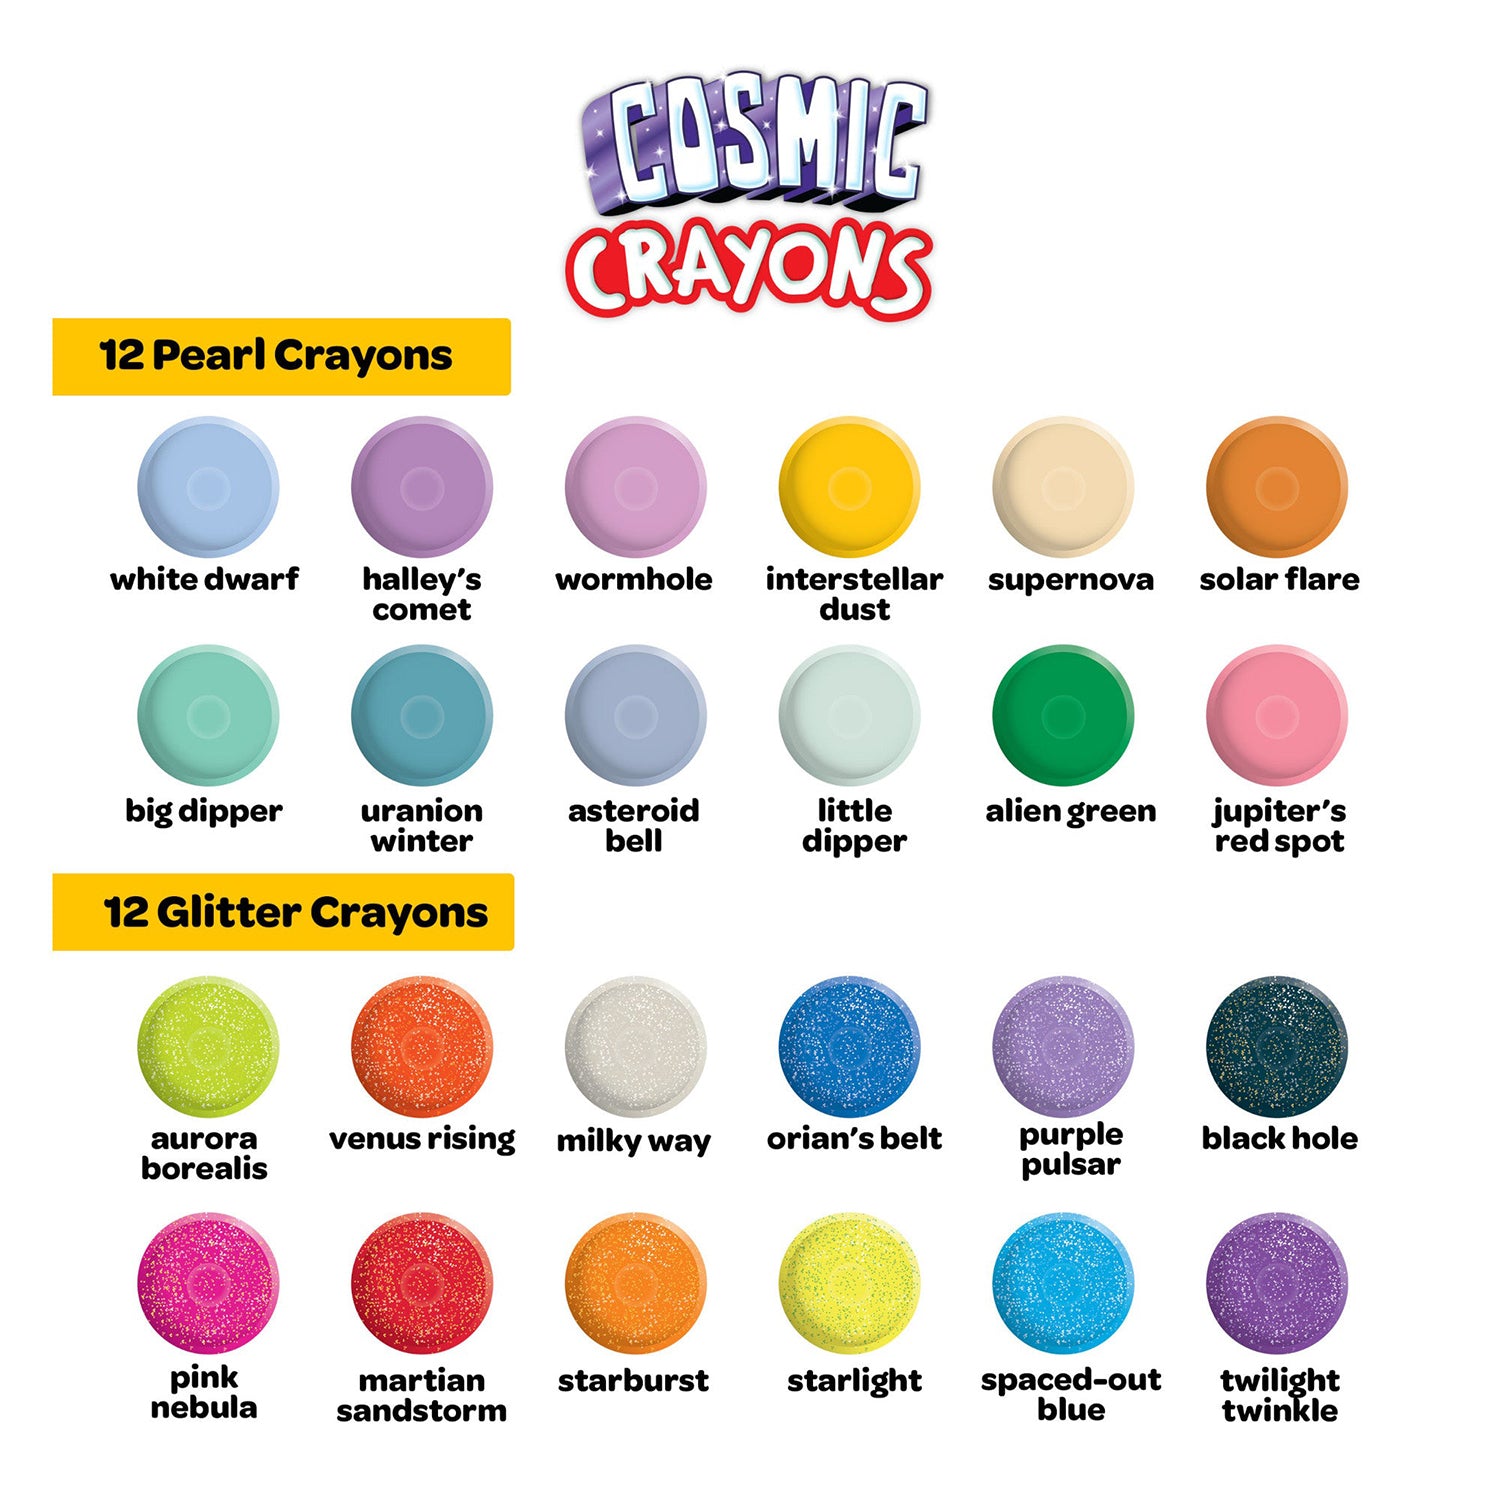 Crayola Cosmic Crayons - 24 Count